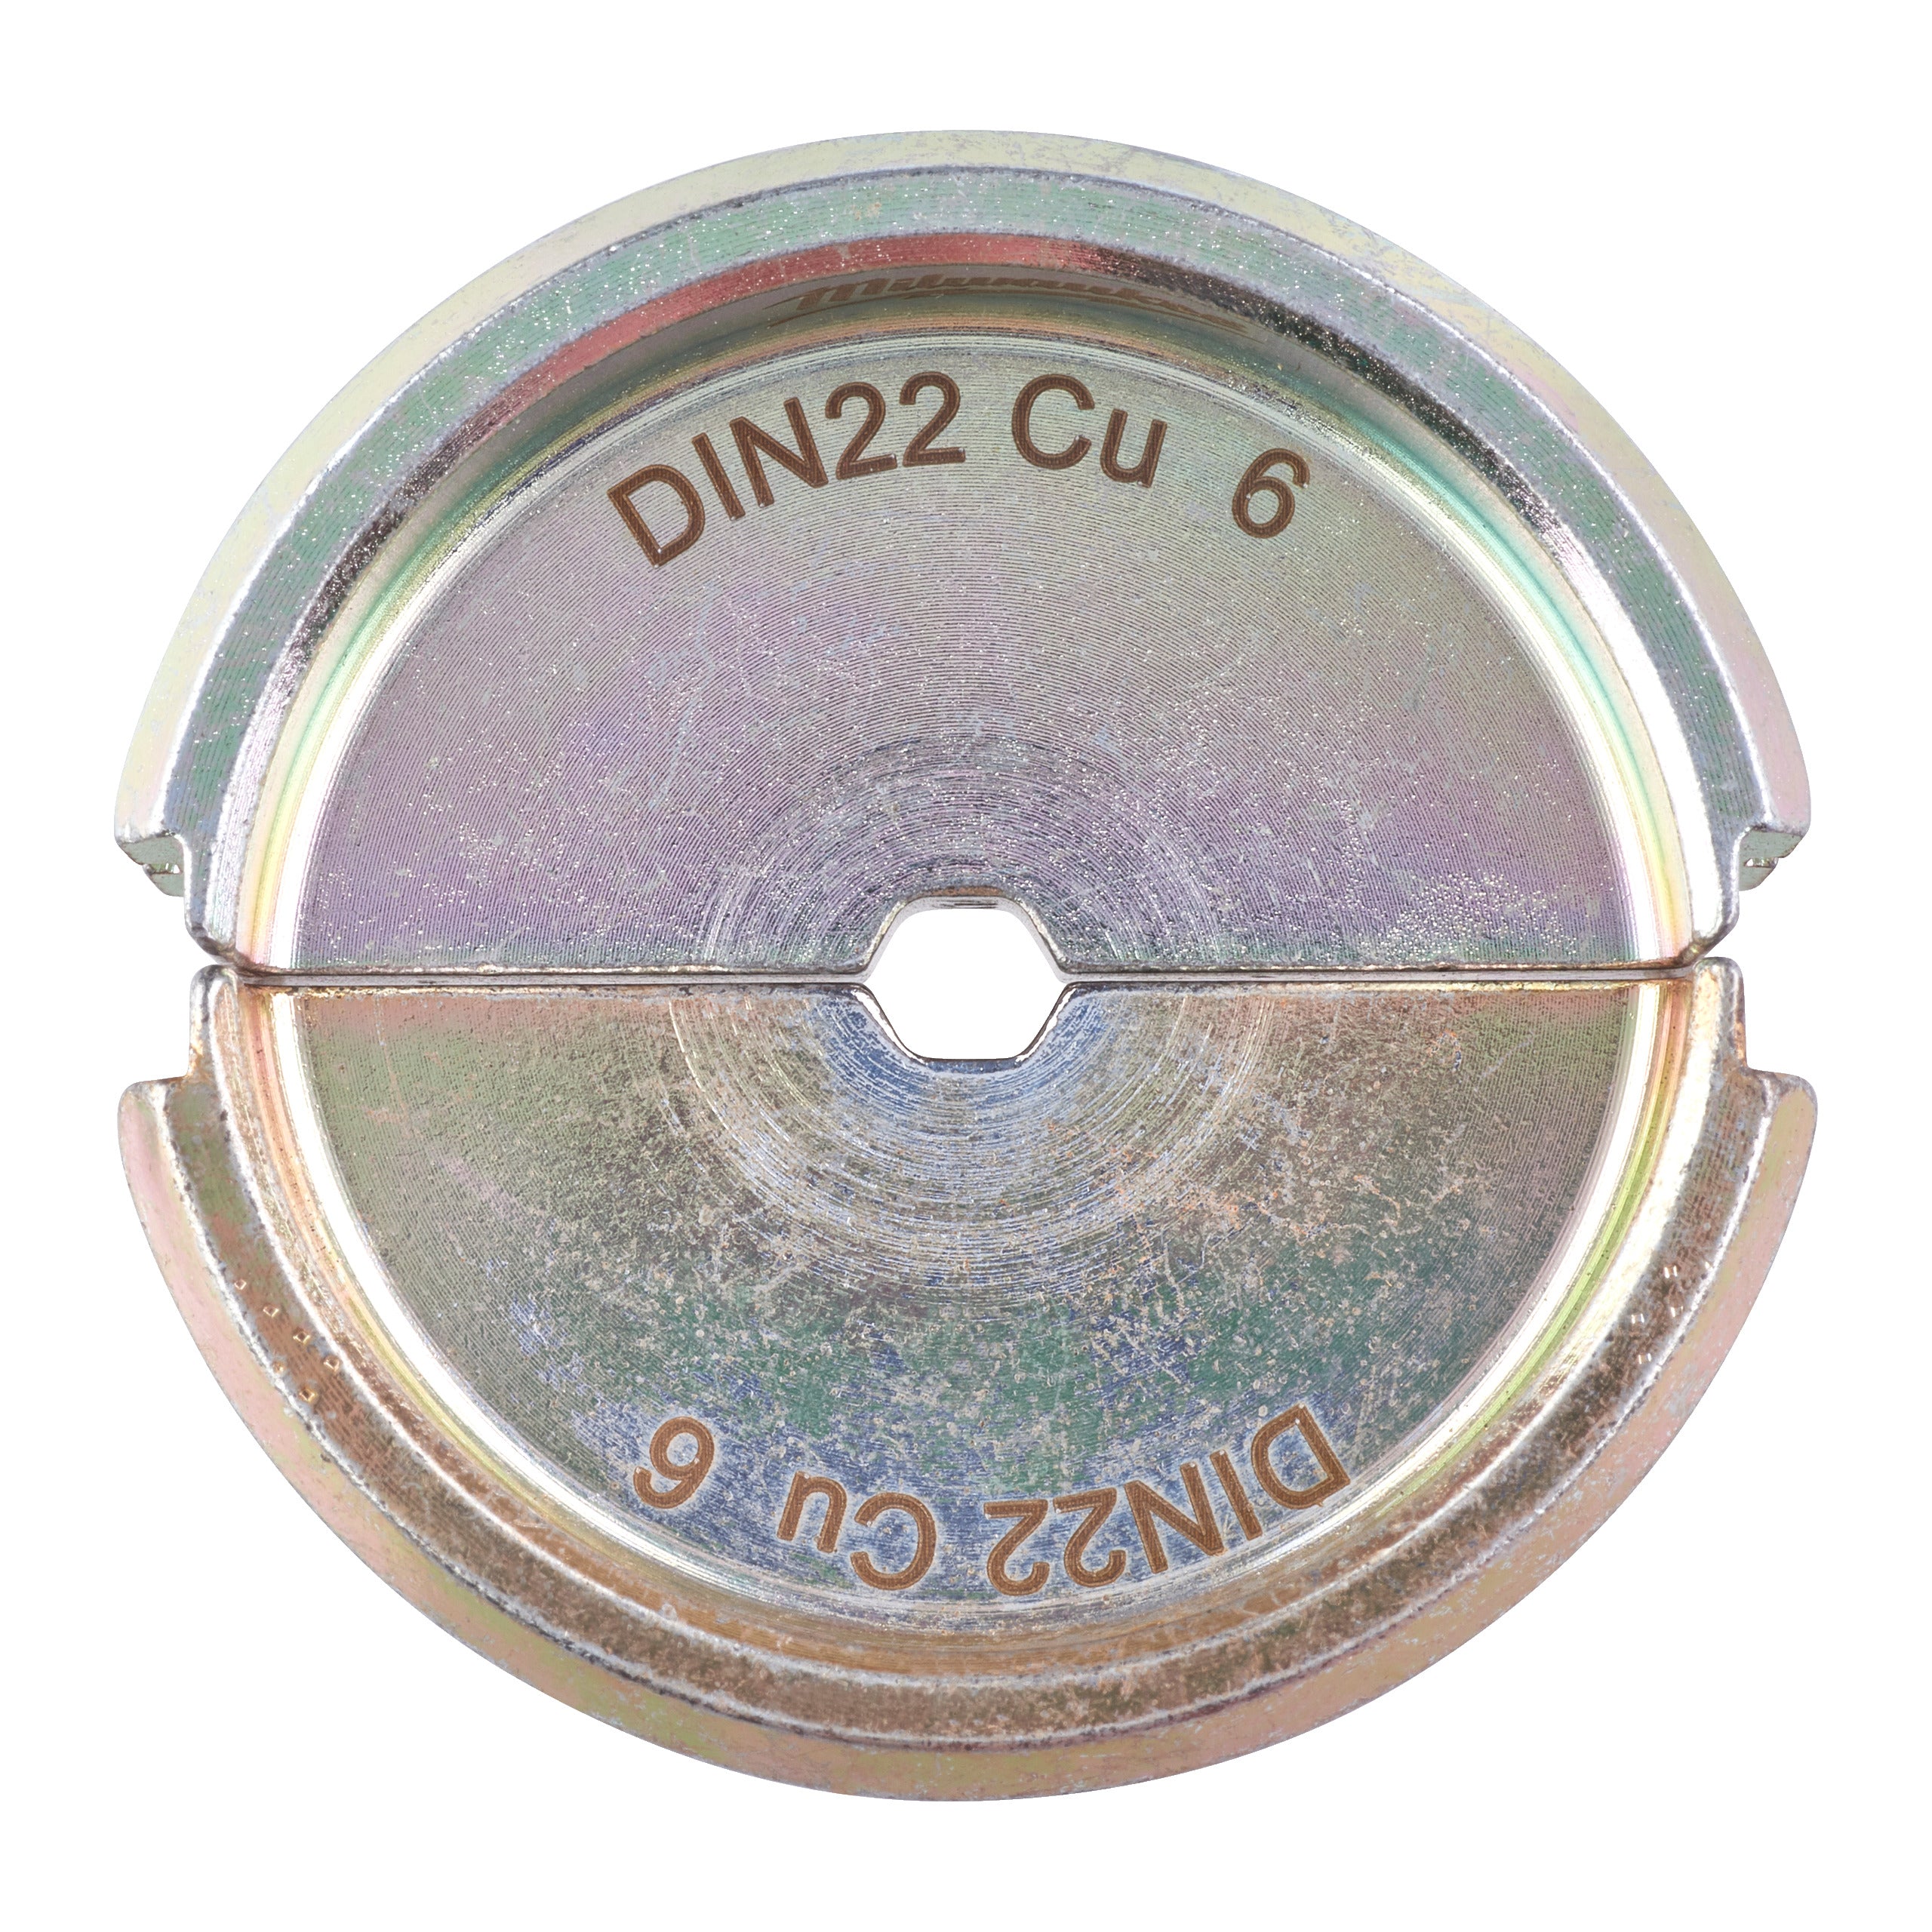 Bac de sertizare DIN22 CU 6 - 1 BUC, Milwaukee, cod 4932464861